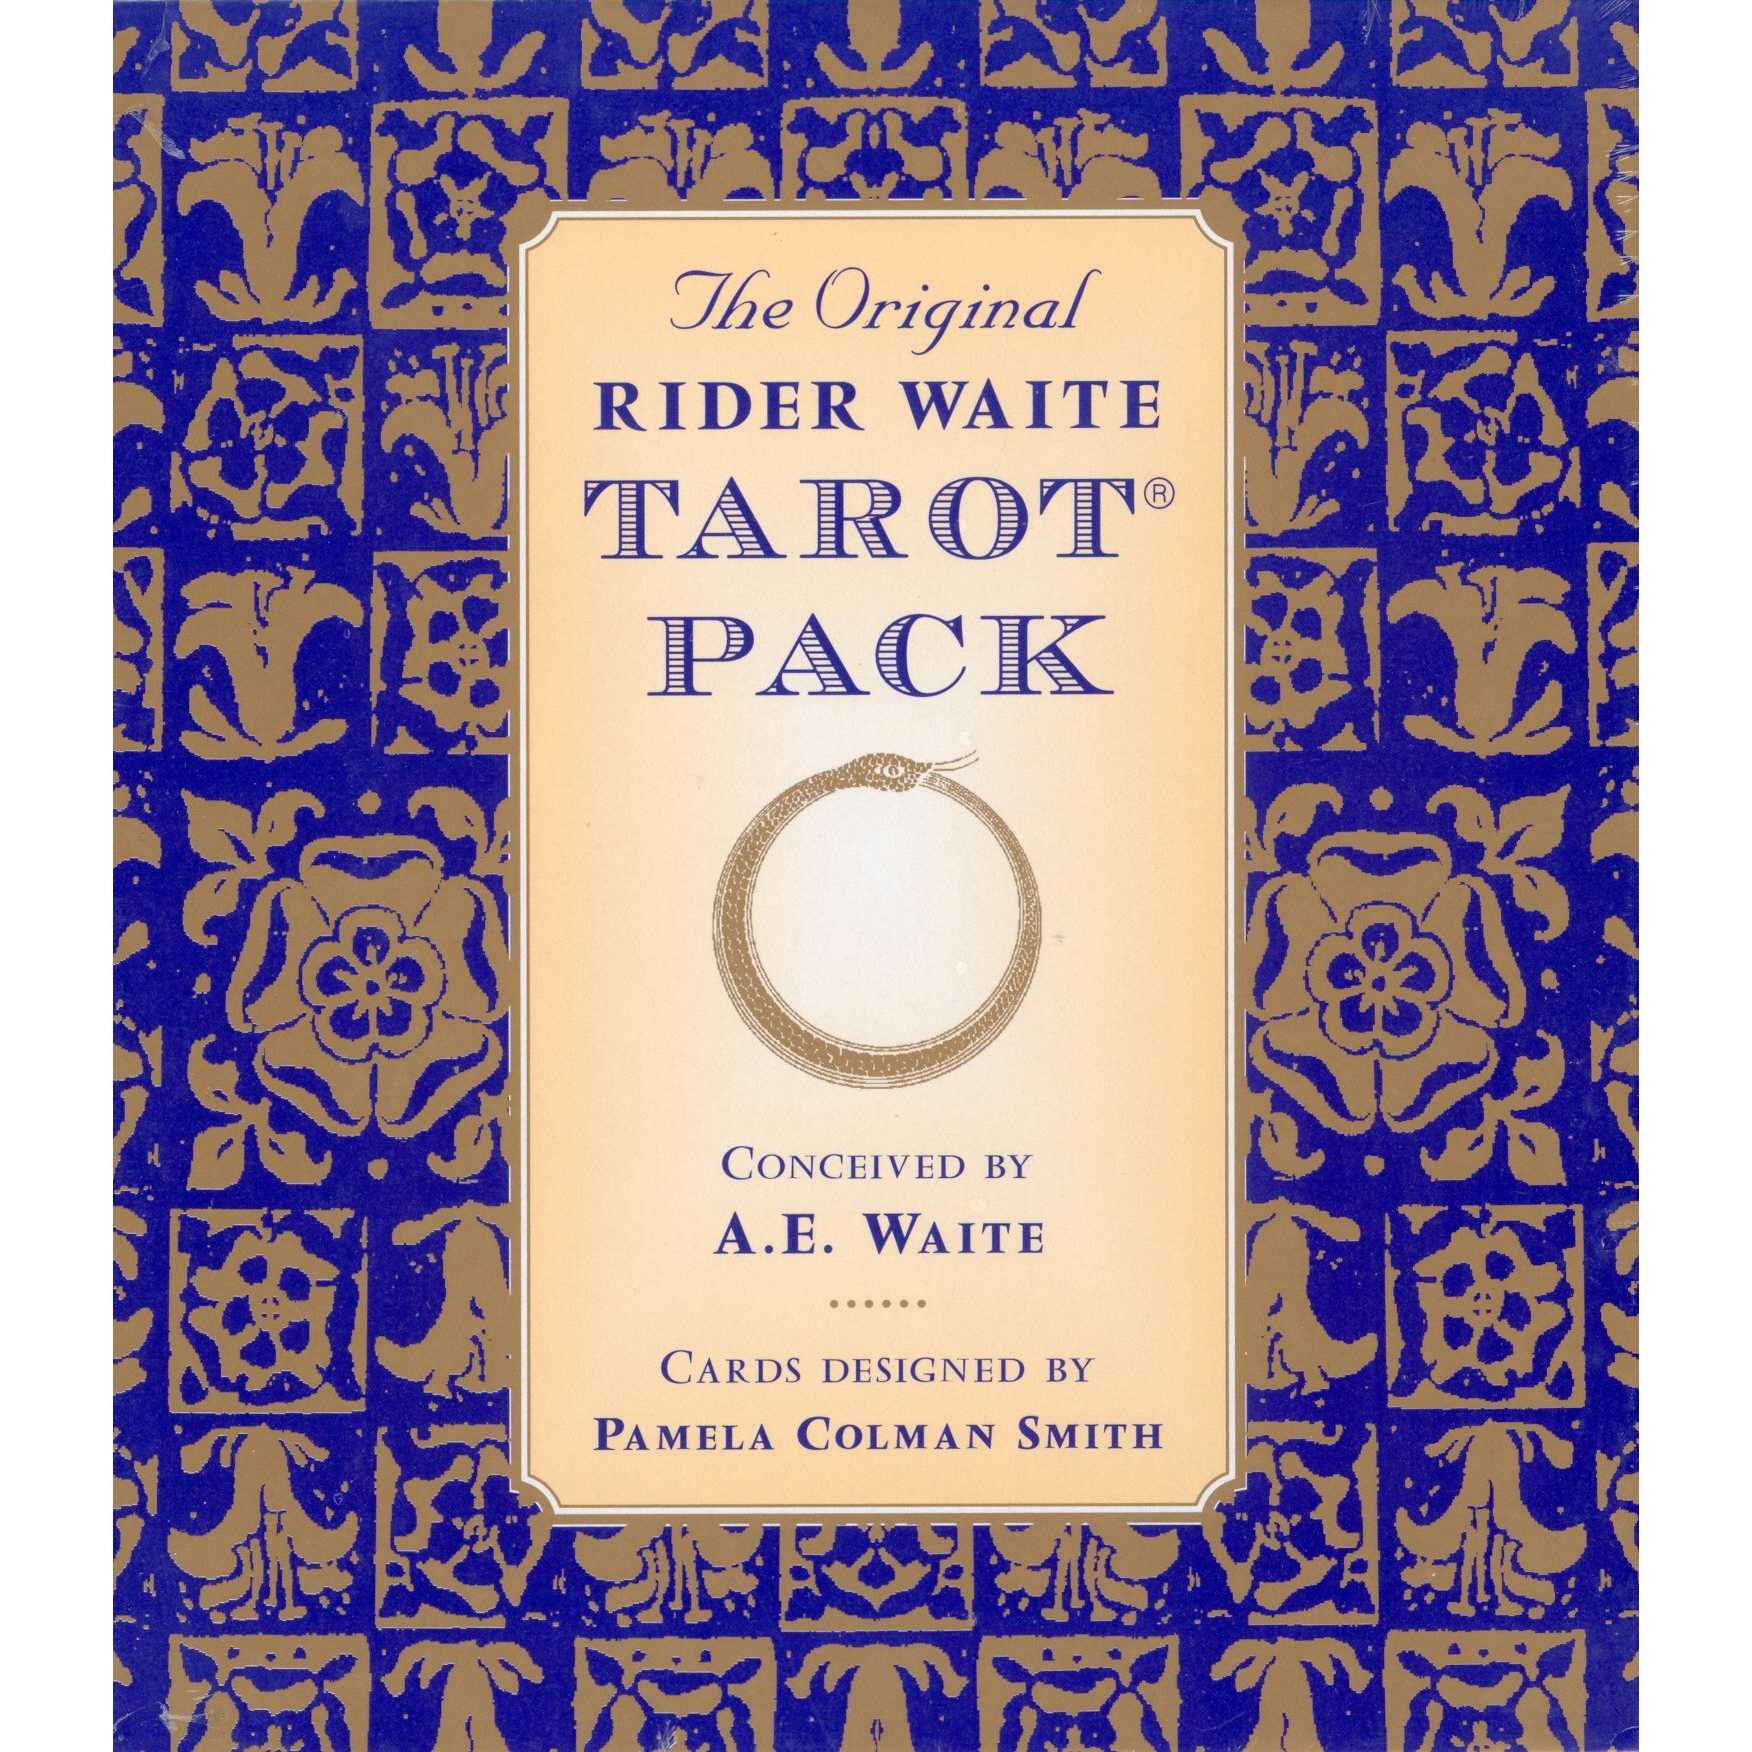 Rider The Original Rider Waite Tarot Pack Cards Deck By A.E. Waite